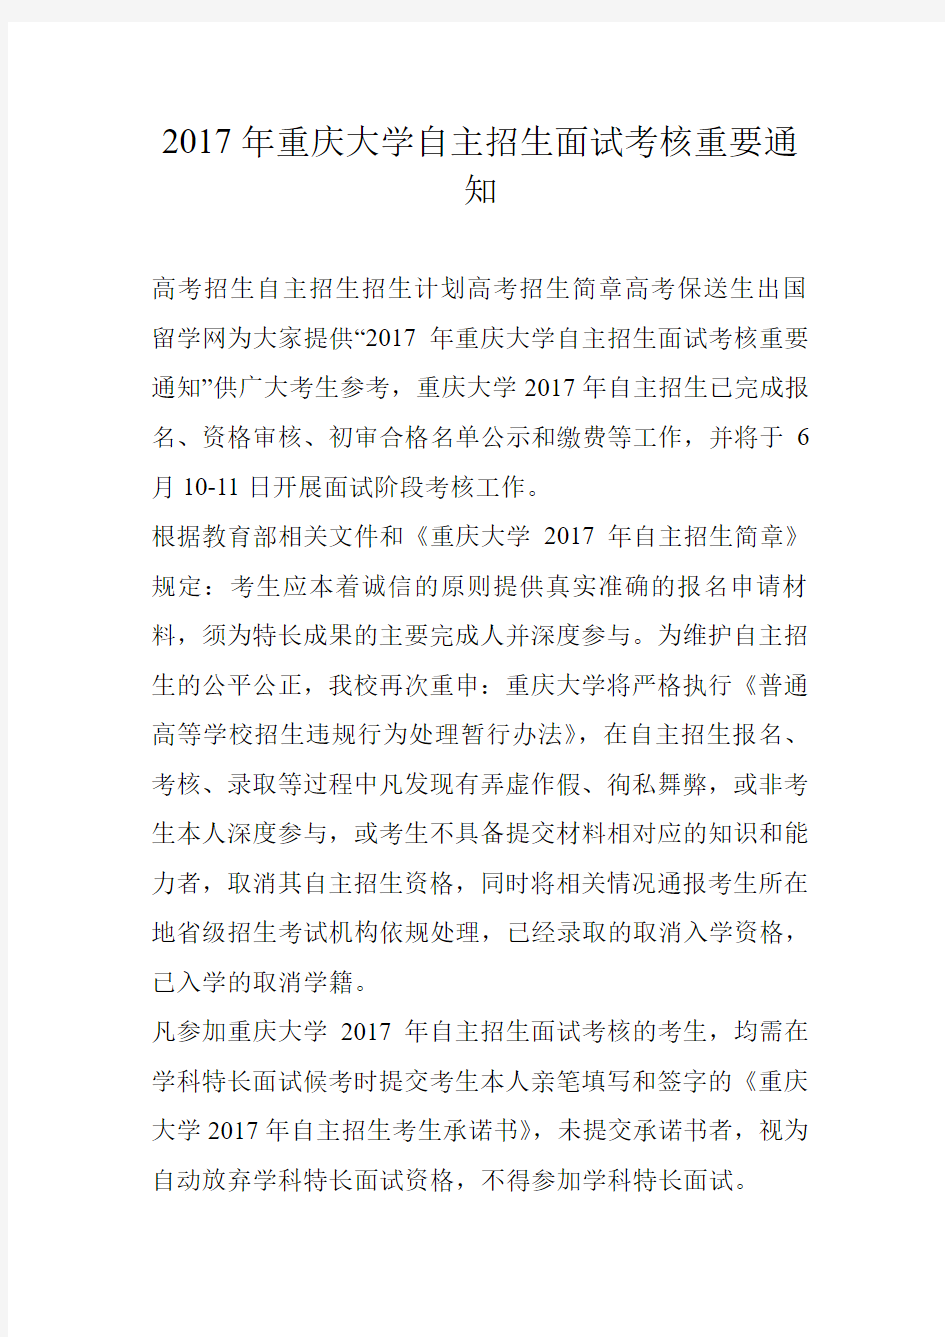 2017年重庆大学自主招生面试考核重要通知